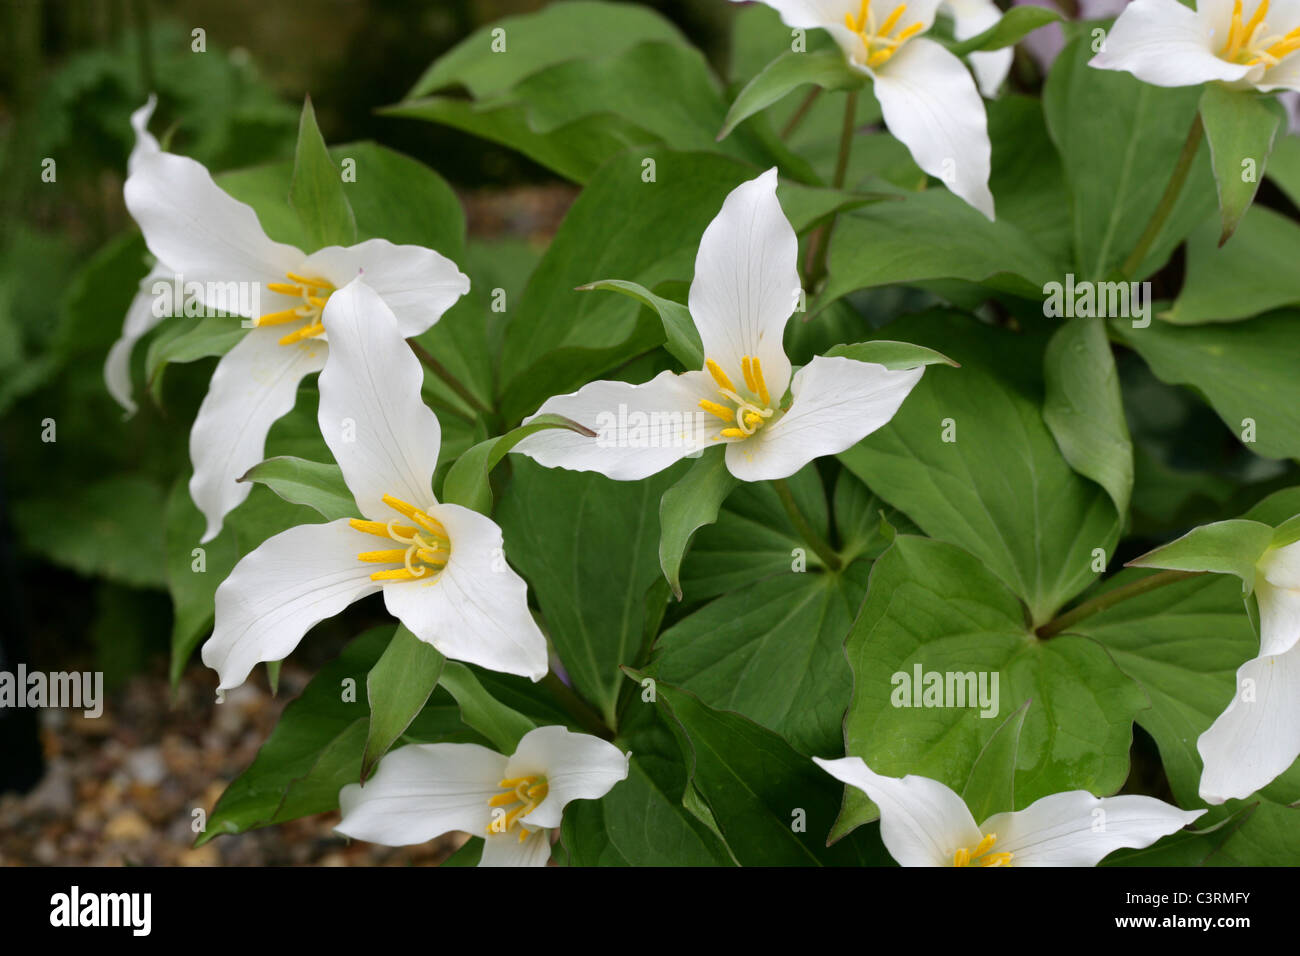 Western Wake Robin or Pacific Trillium, Trillium ovatum, Melanthiaceae Stock Photo